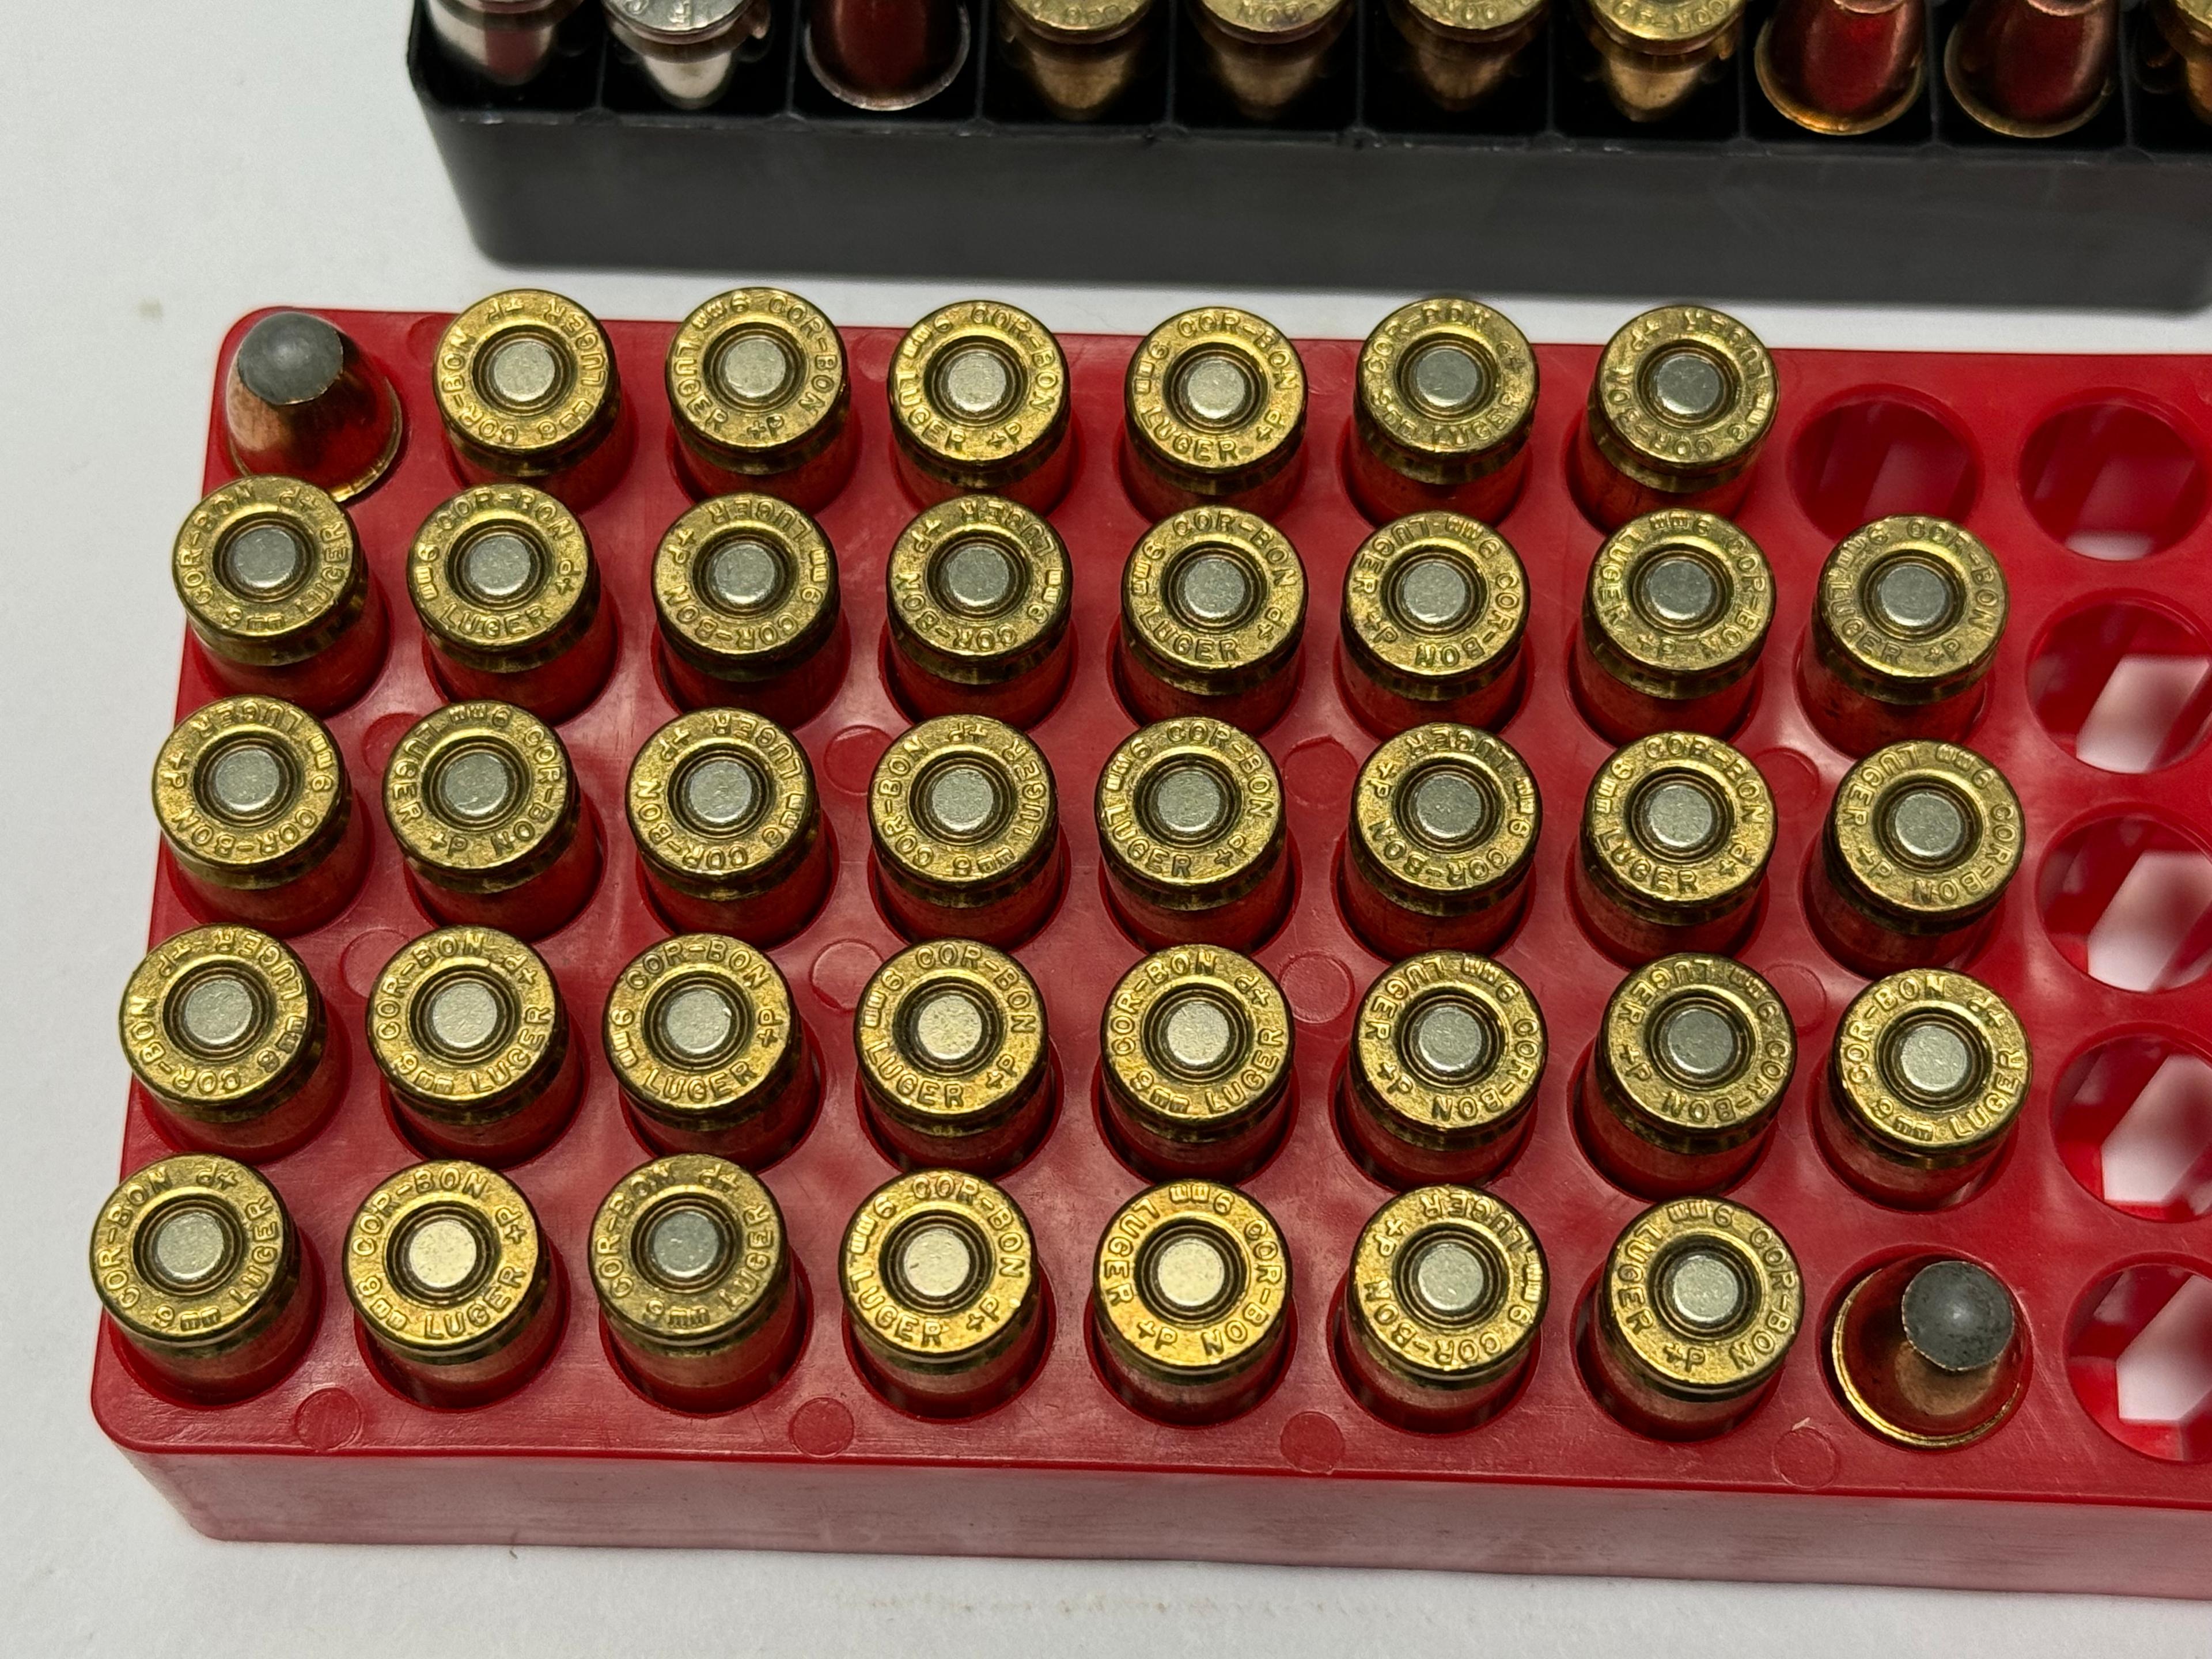 Factory New 89rds. of 9MM LUGER JHP & Cor-bon Ball Ammunition